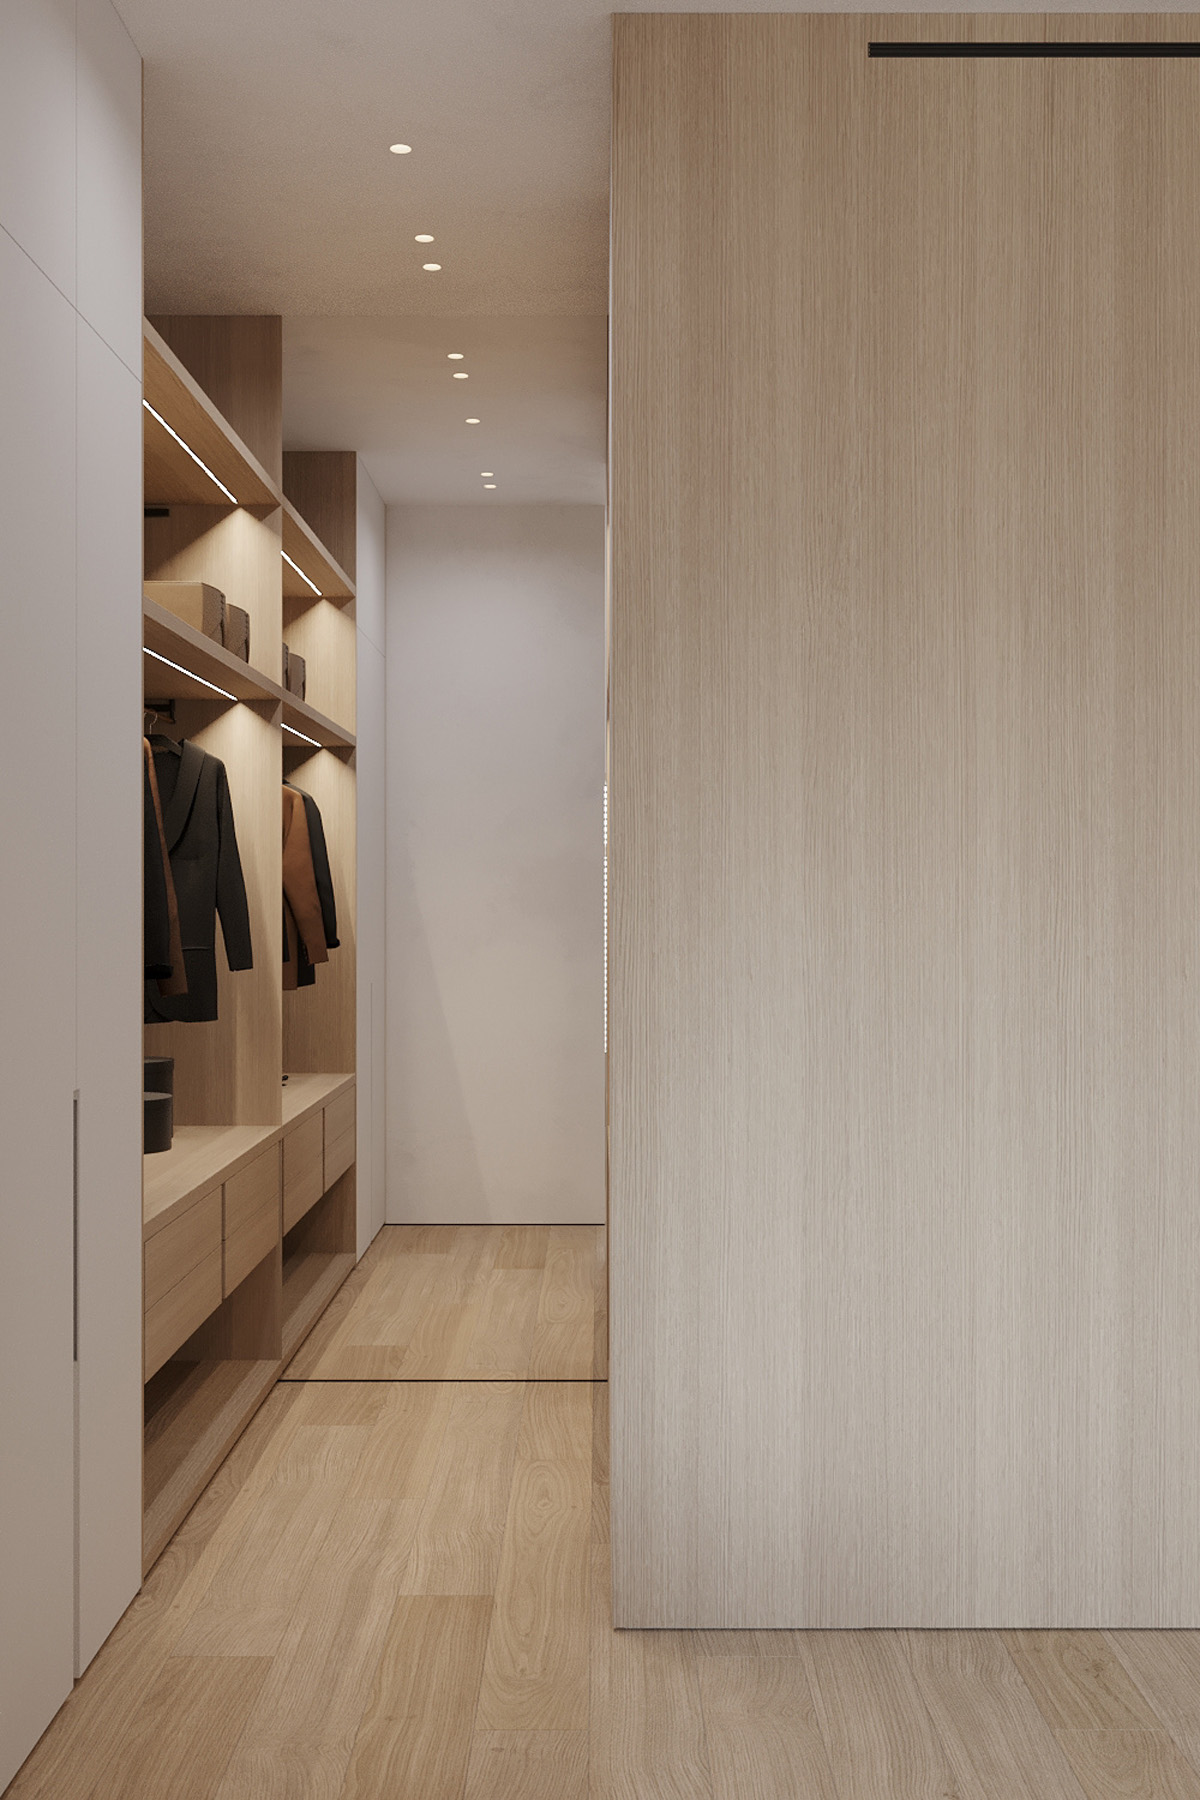 暖米色色调+清新的白色元素，打造柔和的室内设计